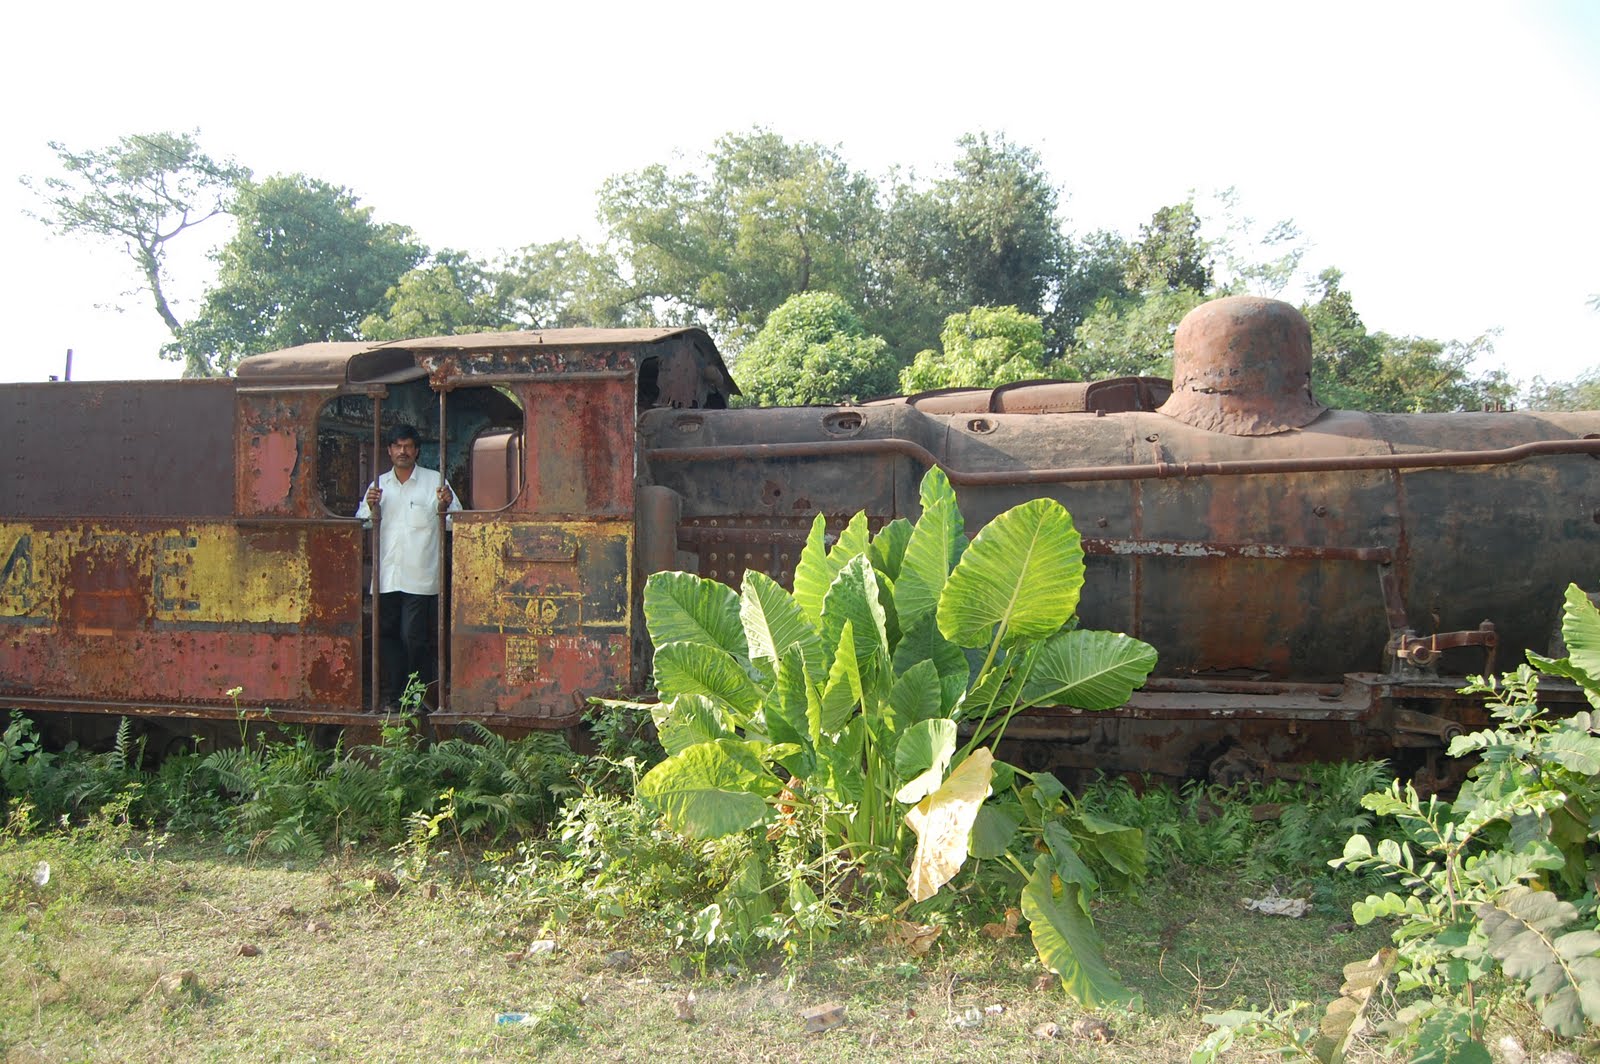 Railway Engines Photos